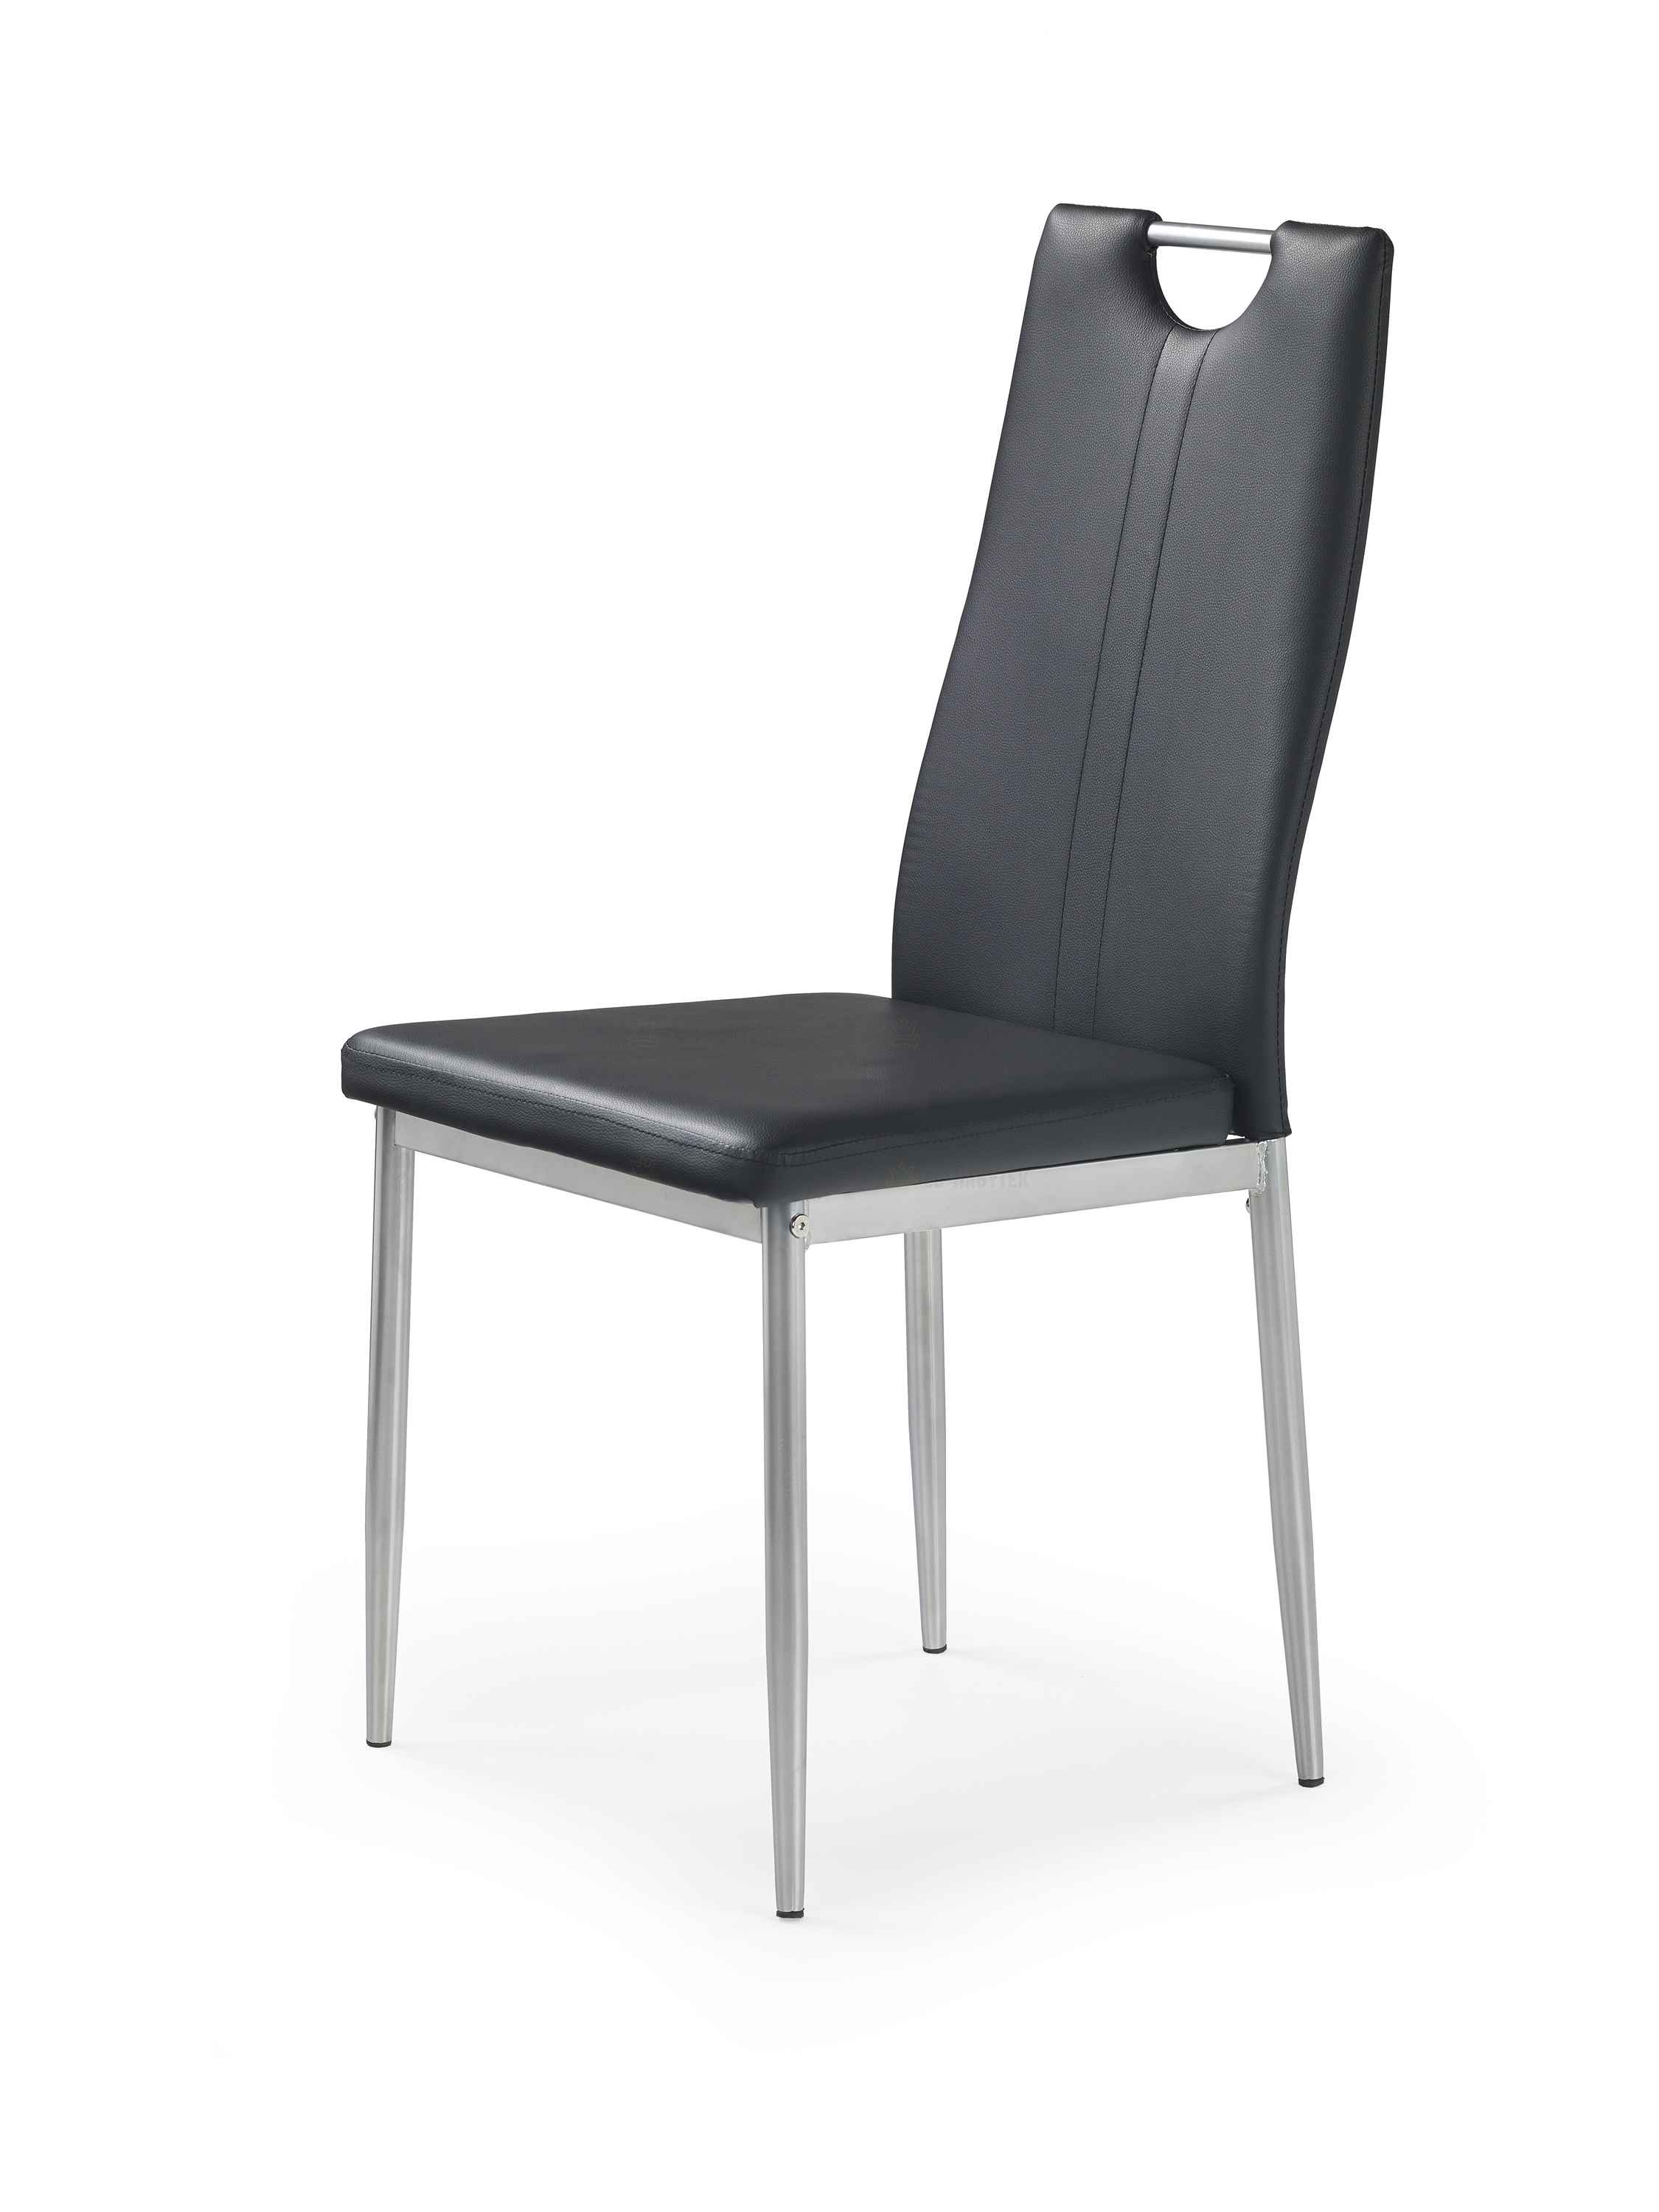 Jídelní židle K202 černá